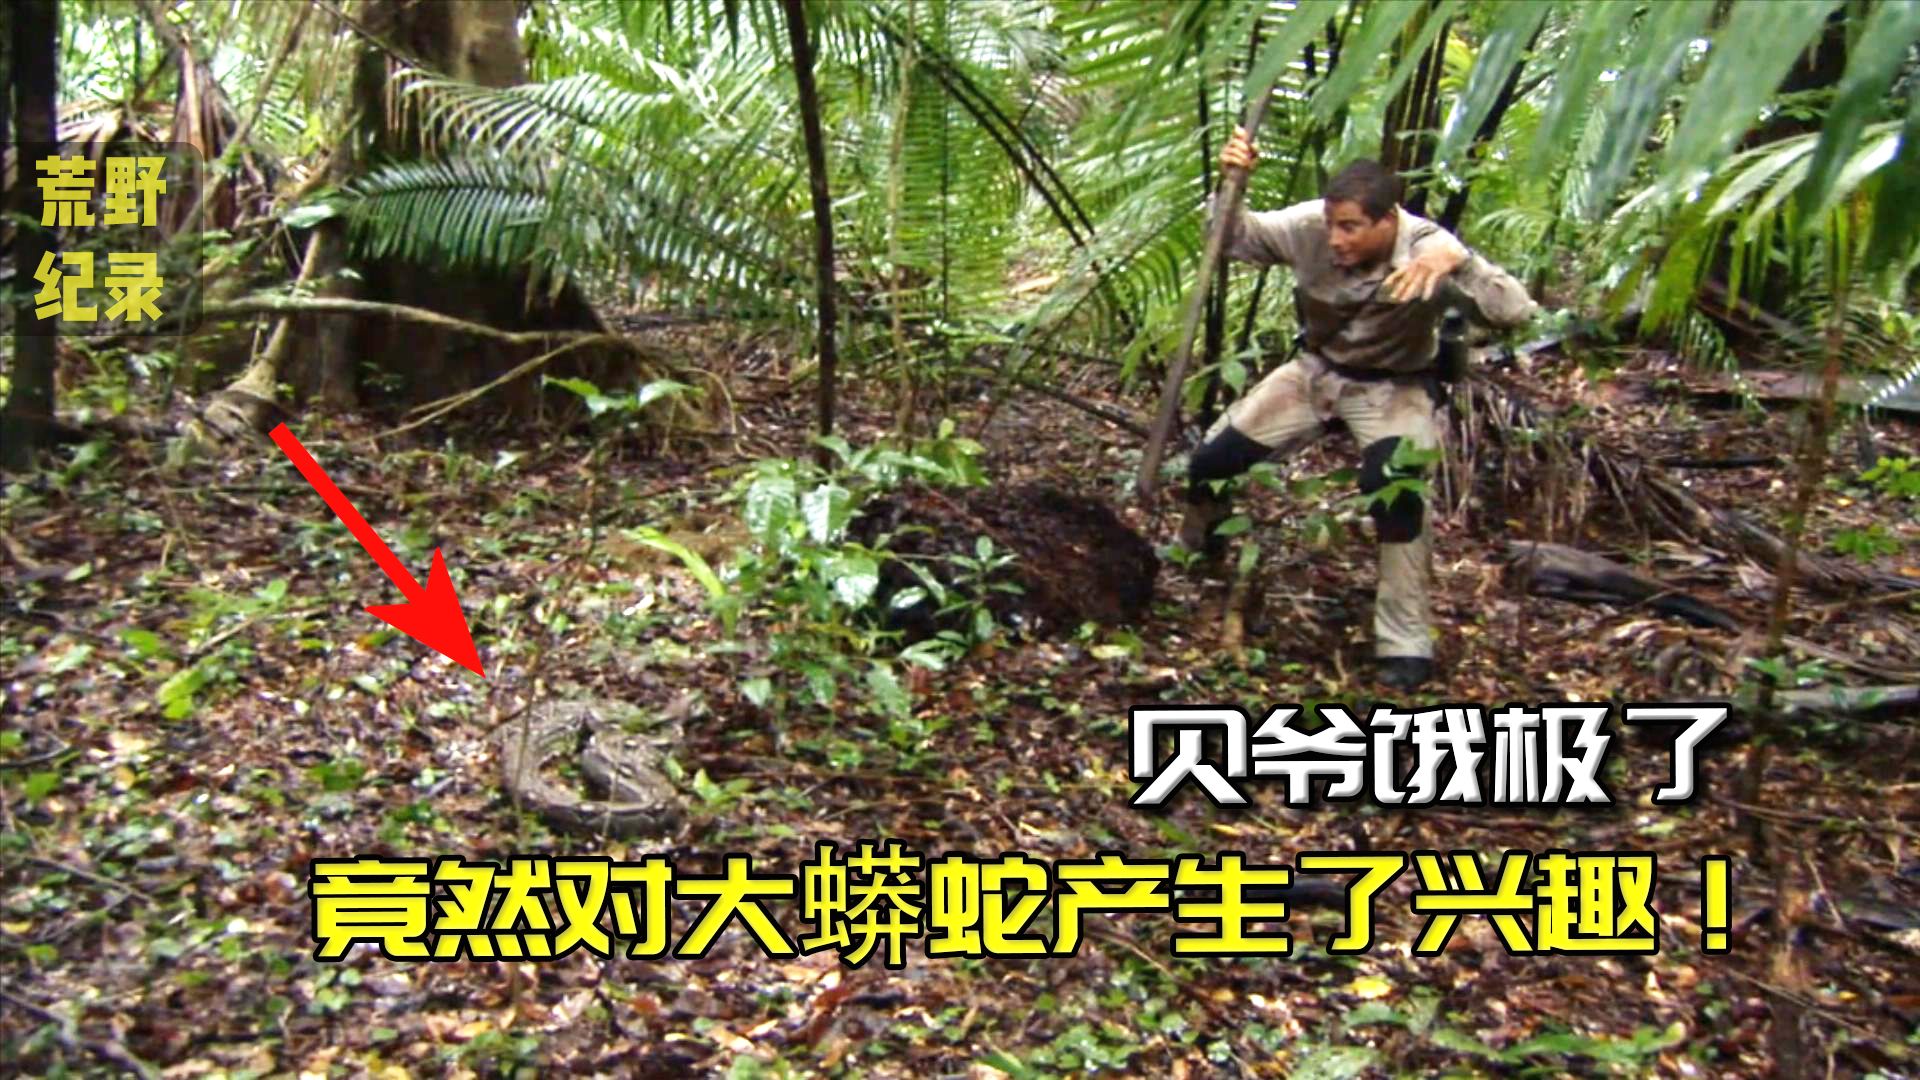 [图]贝爷前往丛林冒险，发现一条大蟒蛇，直接抓住烤着吃！